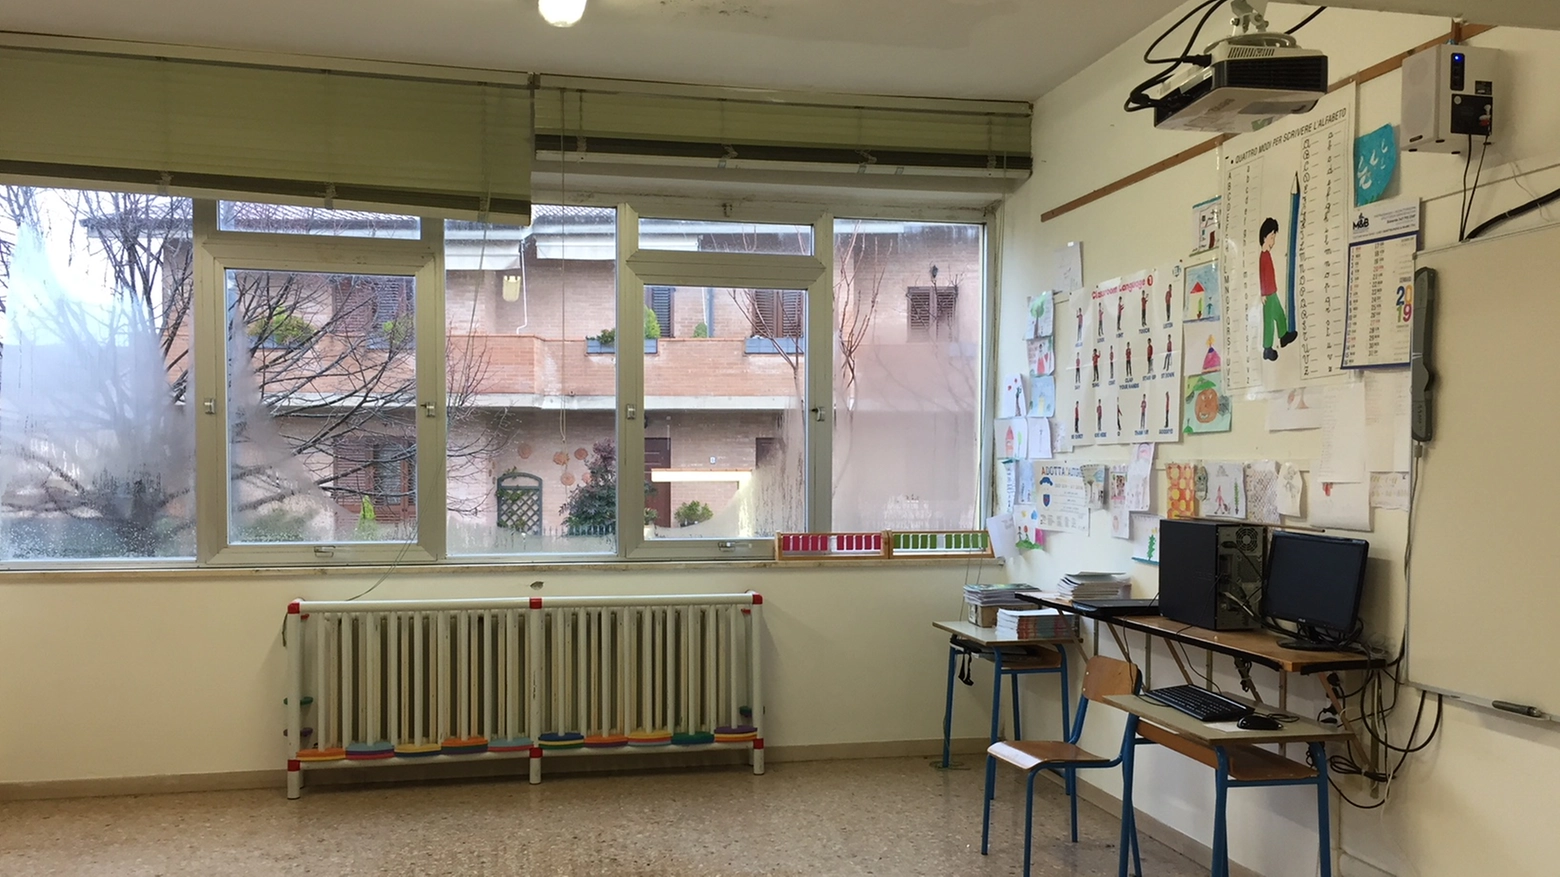 Piove dentro la scuola elementare 'Mercantini'